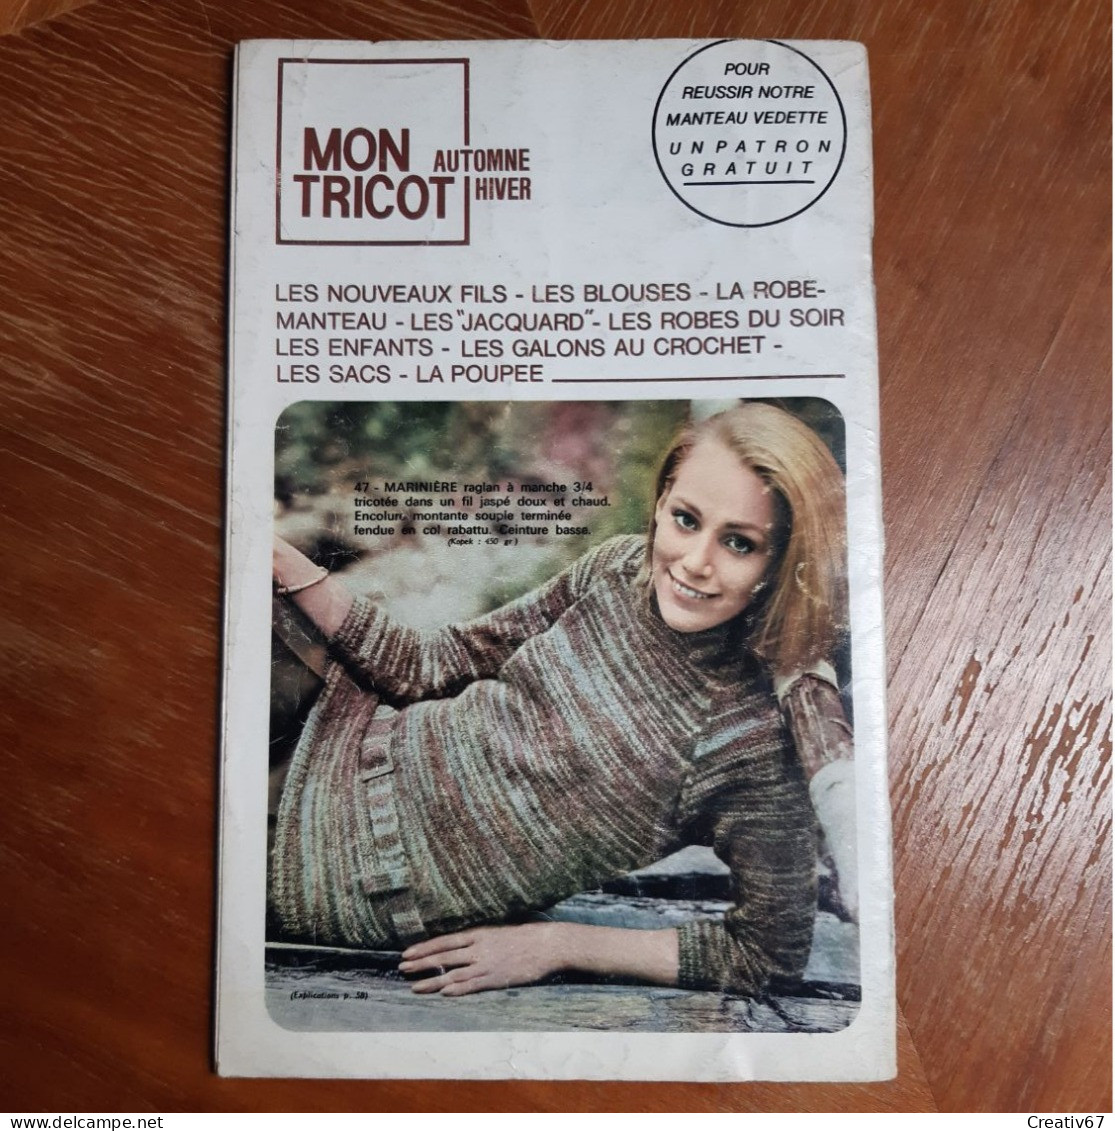 Mon Tricot 75 Edition De 1967 - Literature